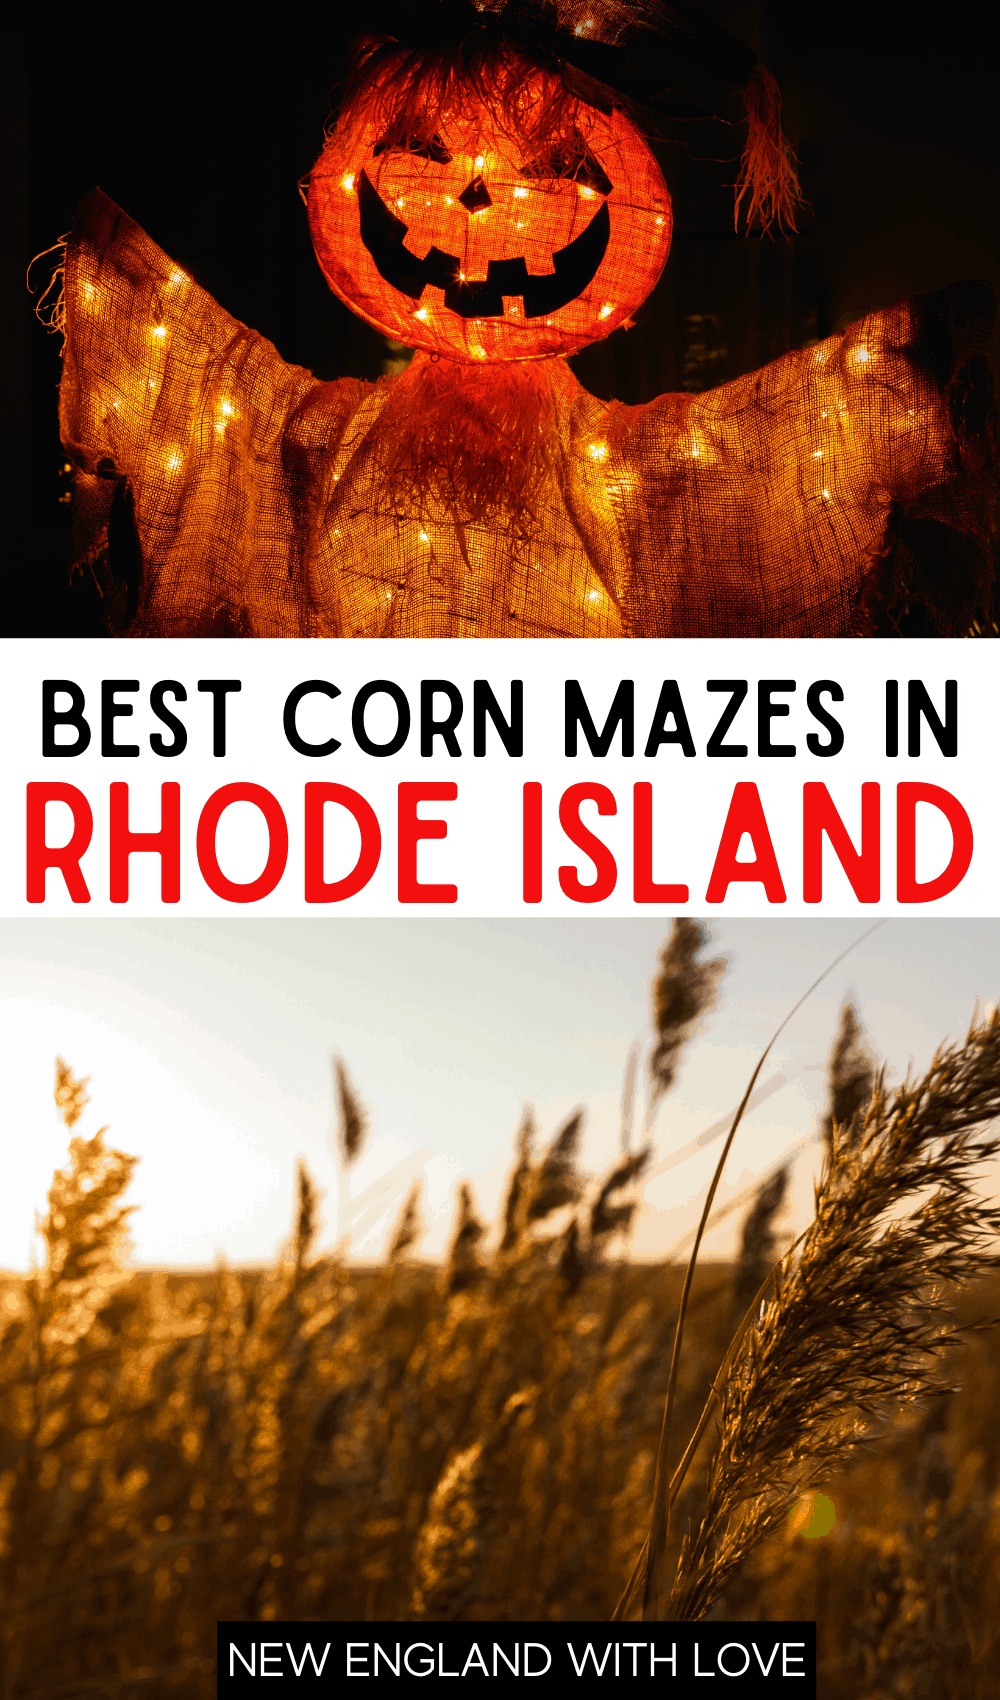 Pinterest graphic reading "BEST CORN MAZES IN RHODE ISLAND"